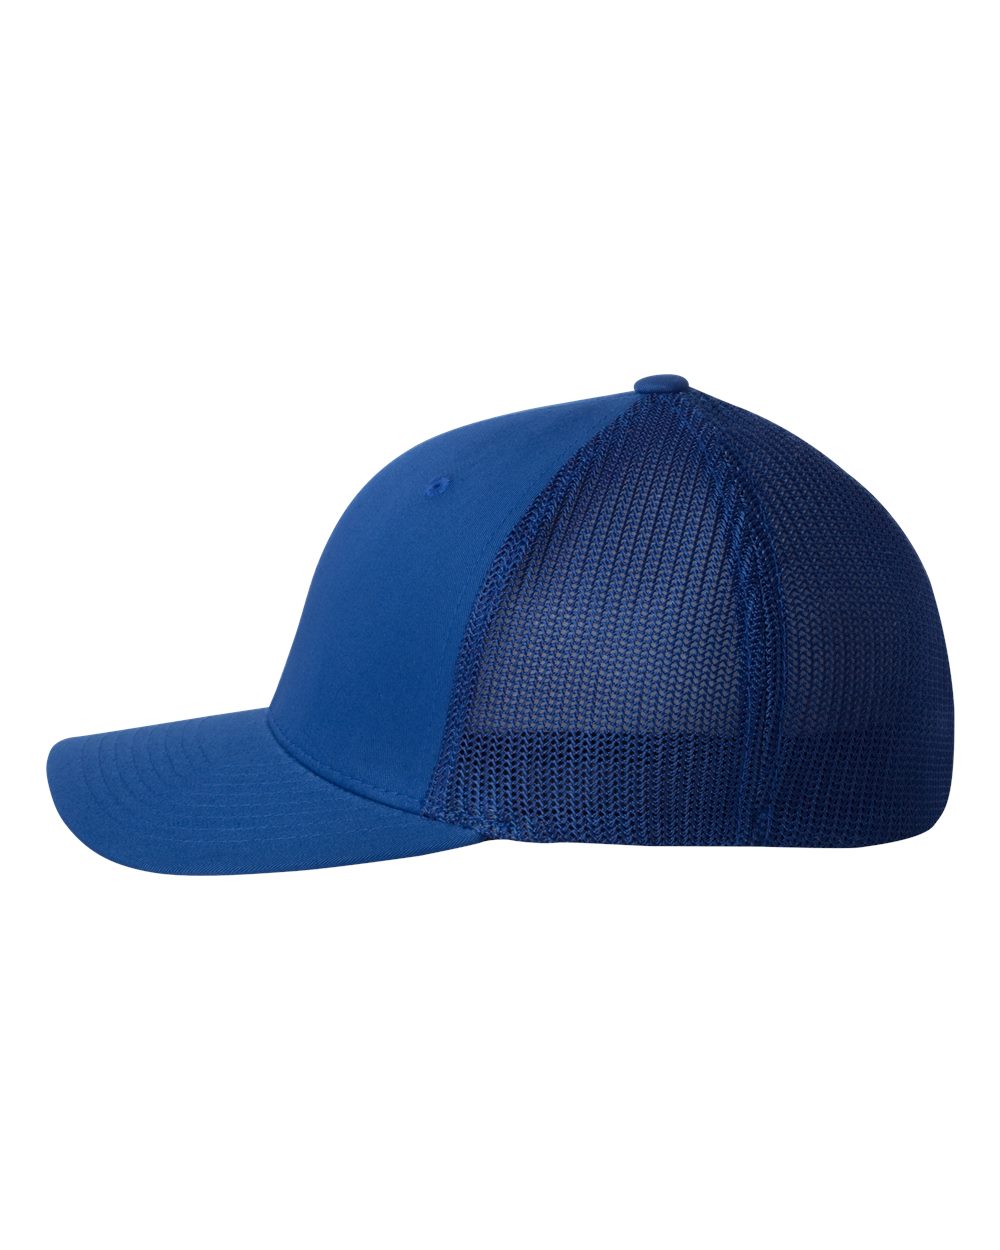 Flexfit Trucker Cap 6511 #color_Royal Blue